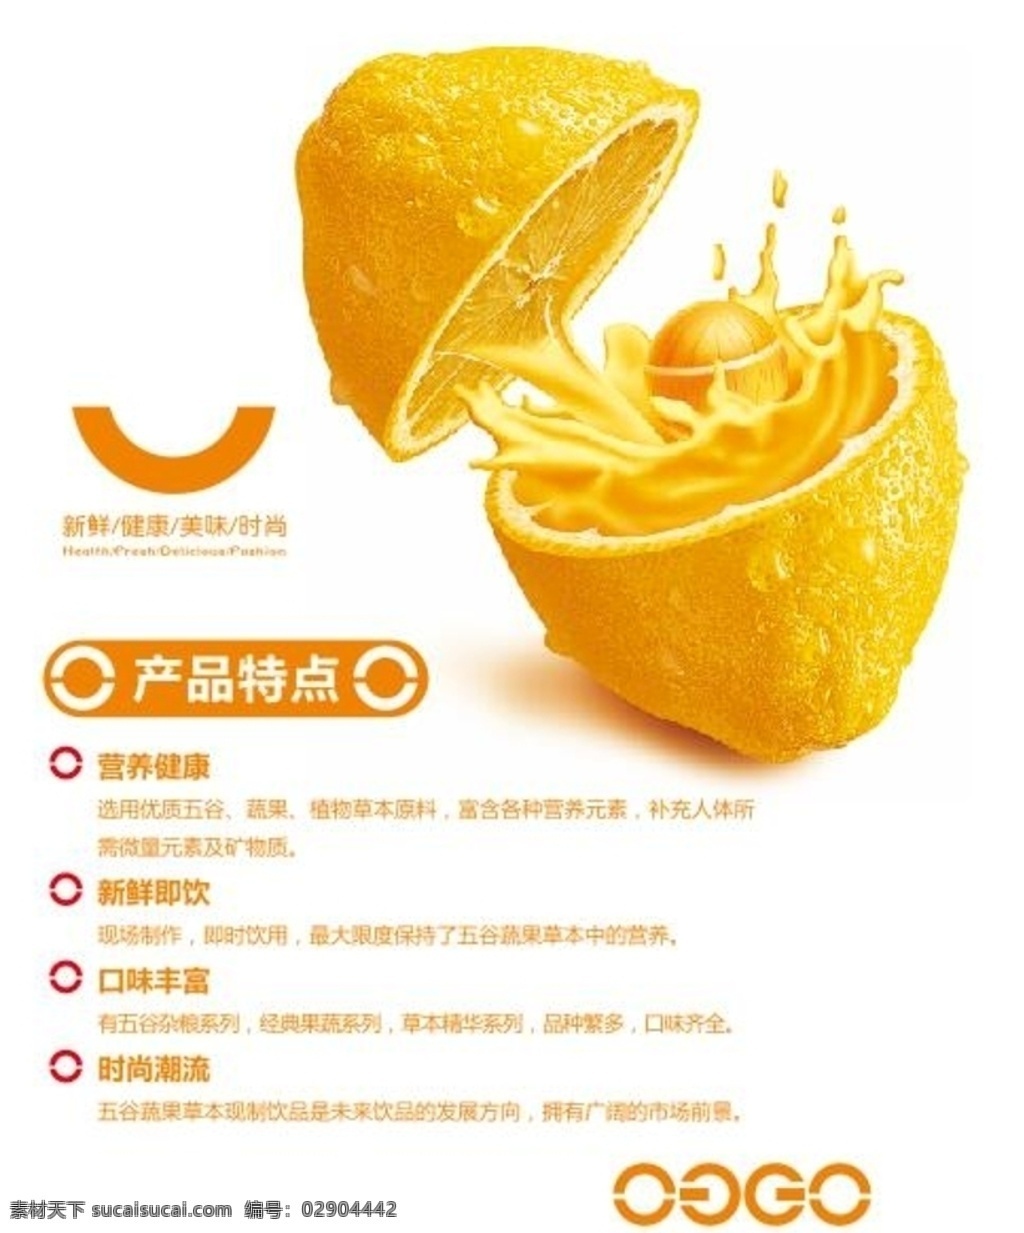 橙汁 高清菜谱 橙子 菜谱 高清橙汁 饮品素材 授权书 生活百科 餐饮美食